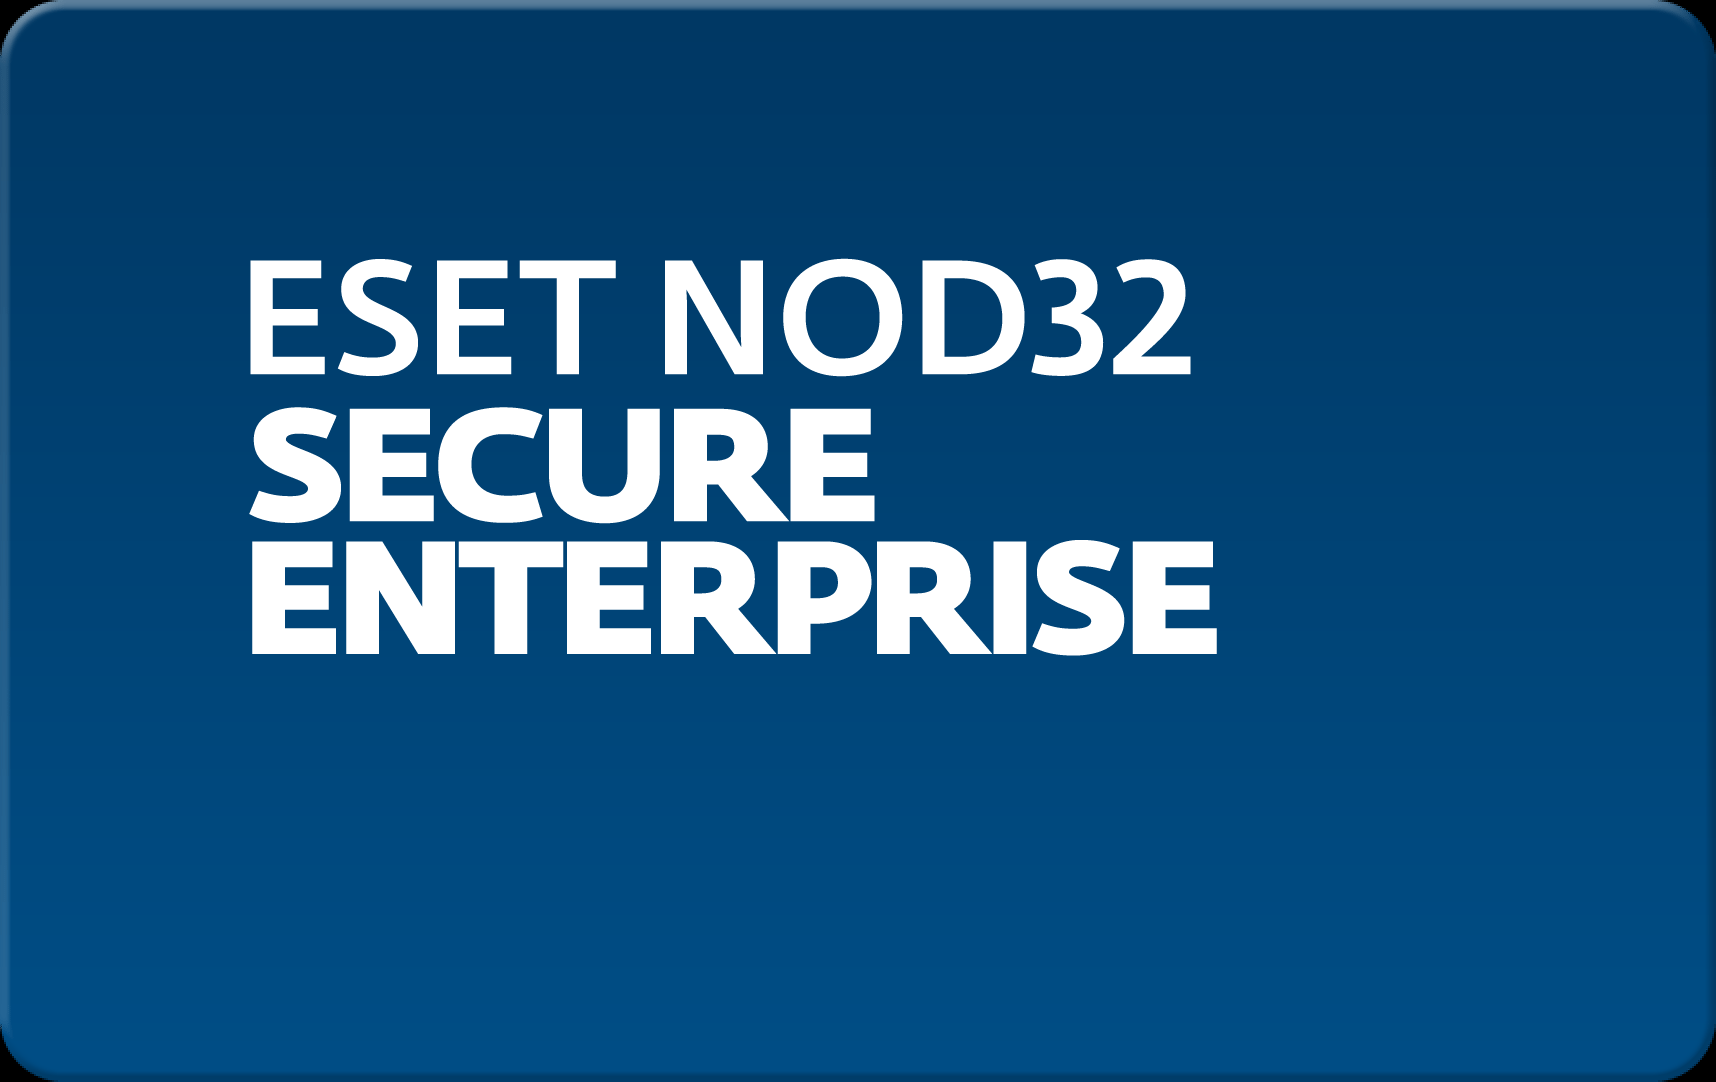        Eset NOD32 Secure Enterprise  166 